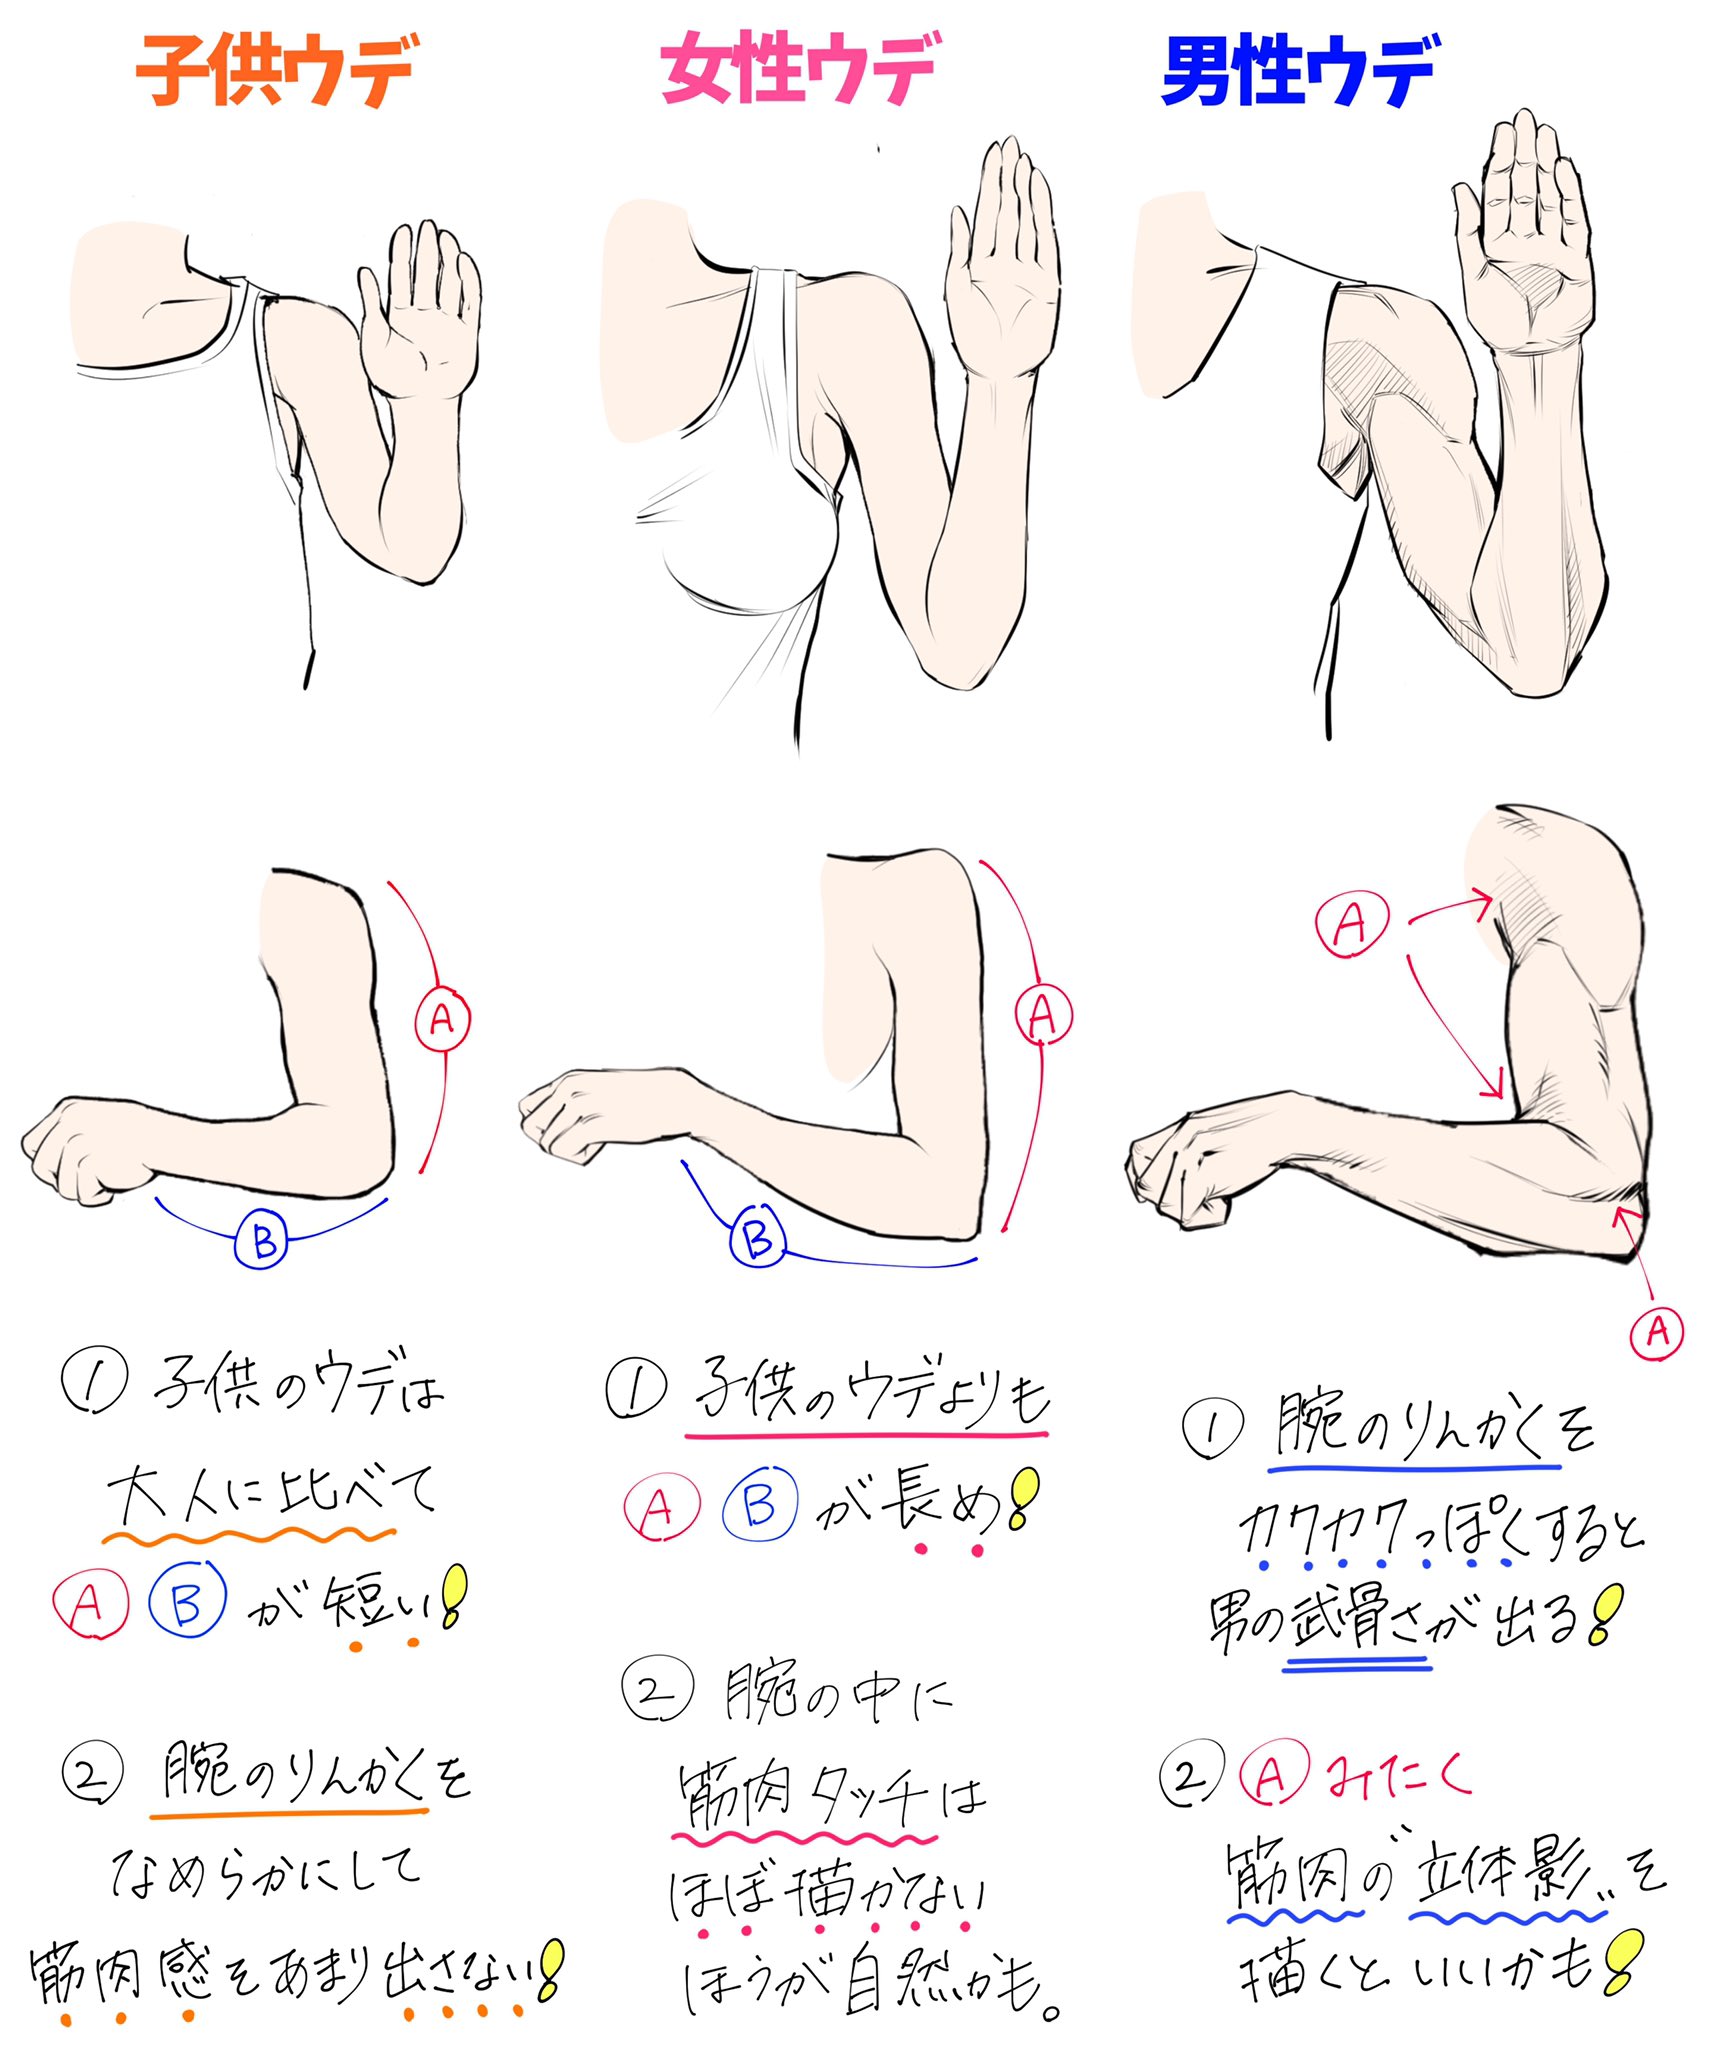 吉村拓也 イラスト講座 腕組みポーズの描き方 ウデの重なりと角度 が上達する ダメかも と 良いかも 素肌版とスーツ服版です T Co 9p3xdgs0xh Twitter